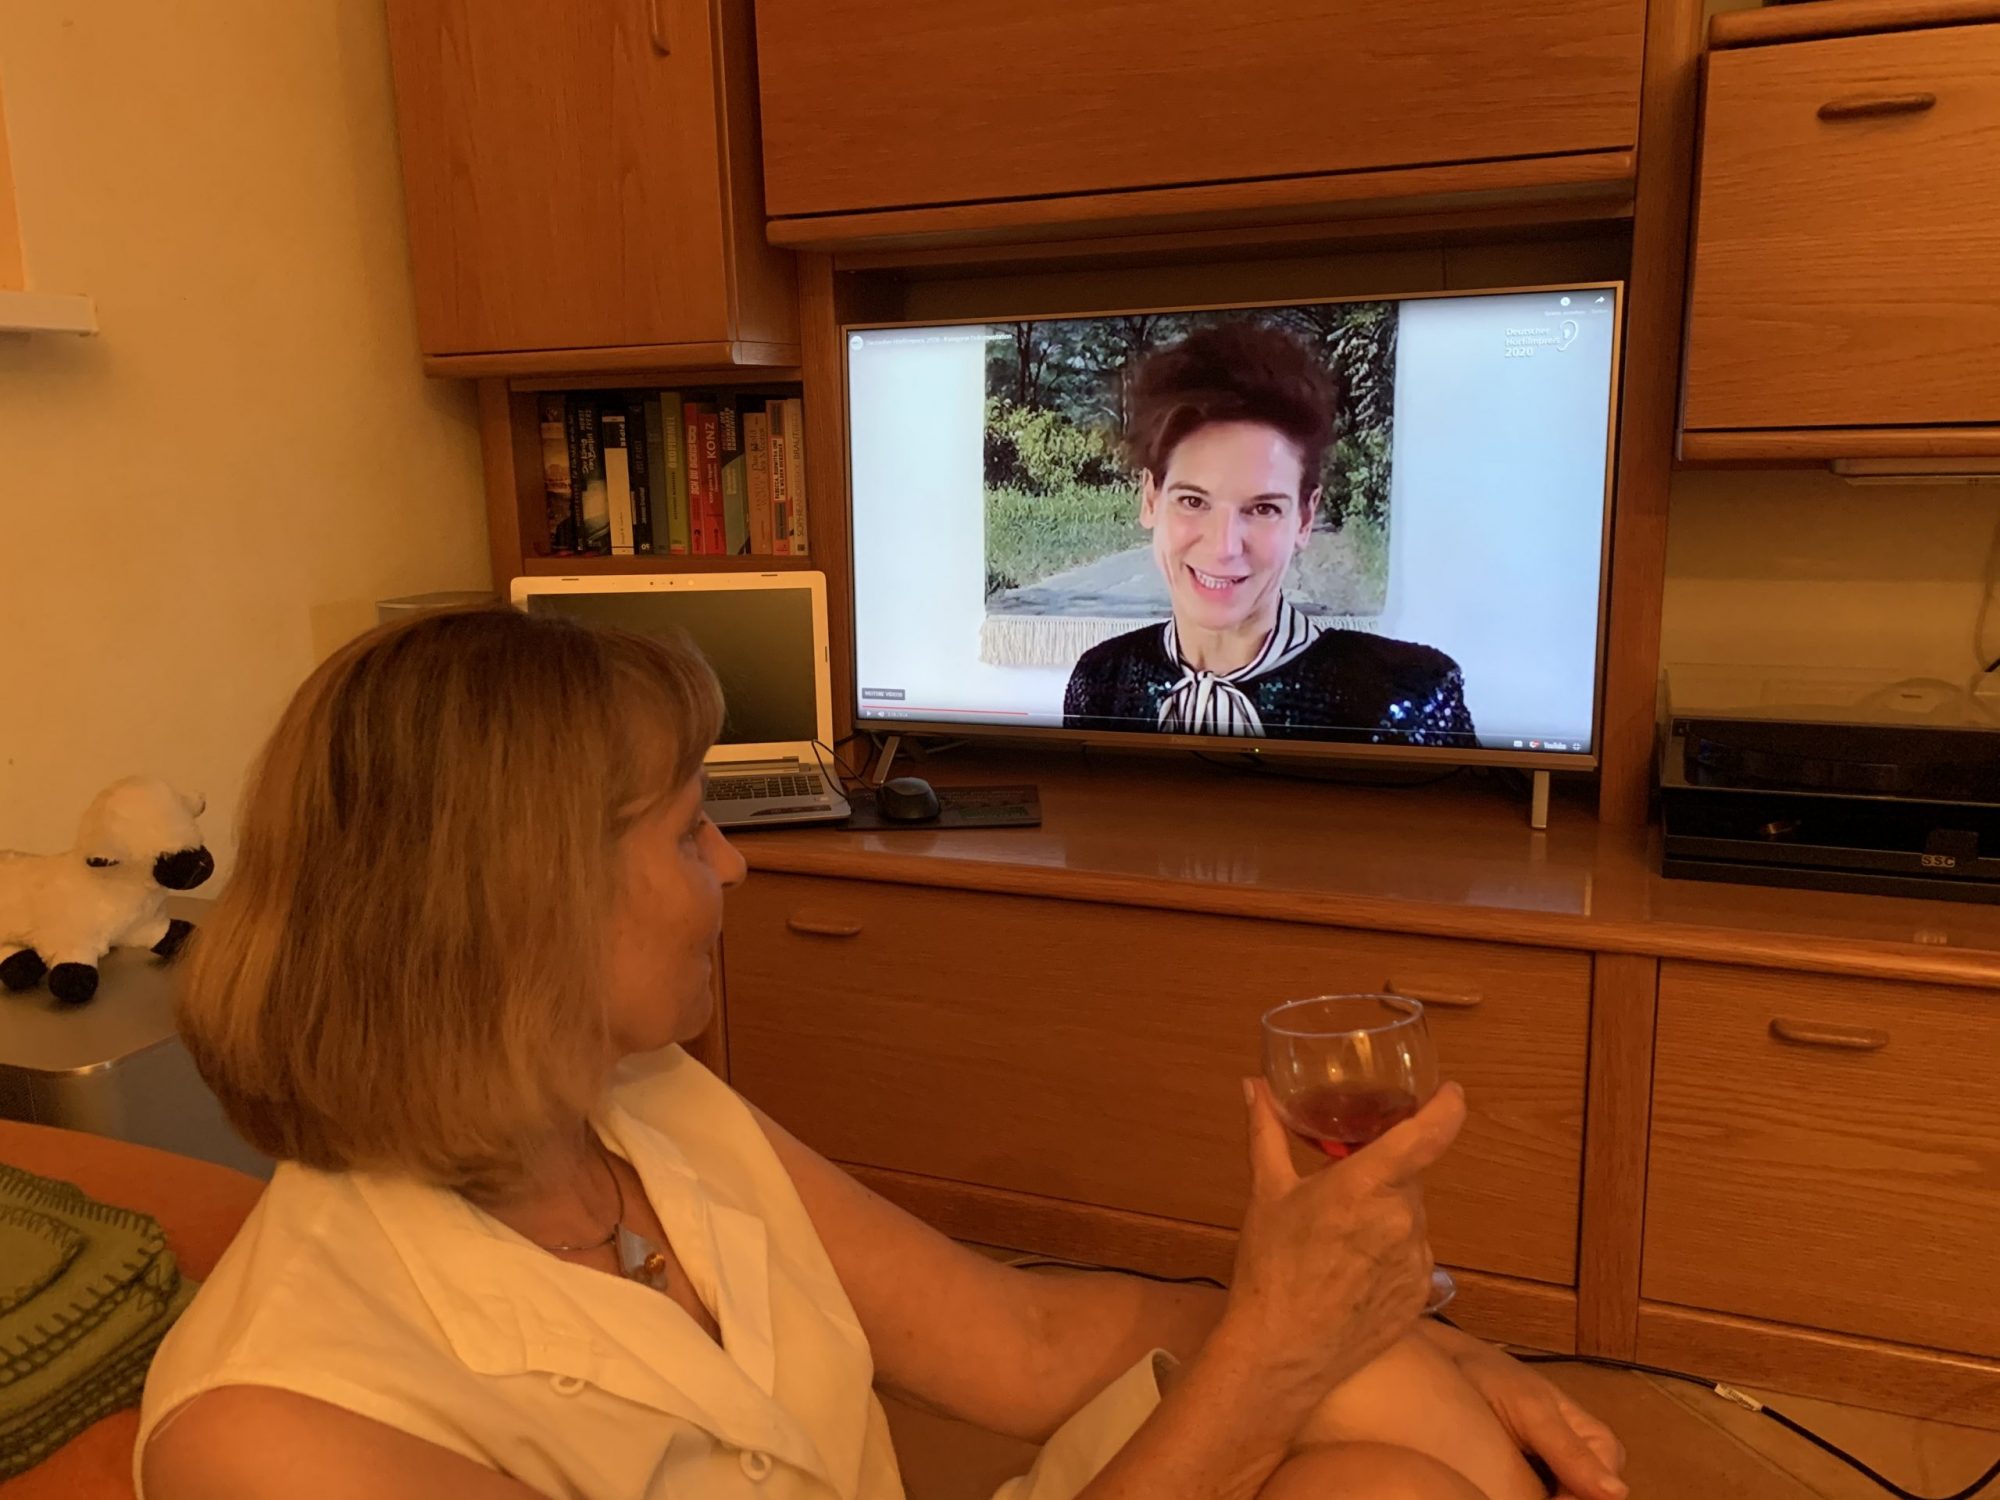 Die Blindgängerin sitzt vor einem TV-Bildschirm, auf dem Bibiana Beglau zu sehen ist. Mit einem Weinglas prostet sie der Schauspielerin zu.